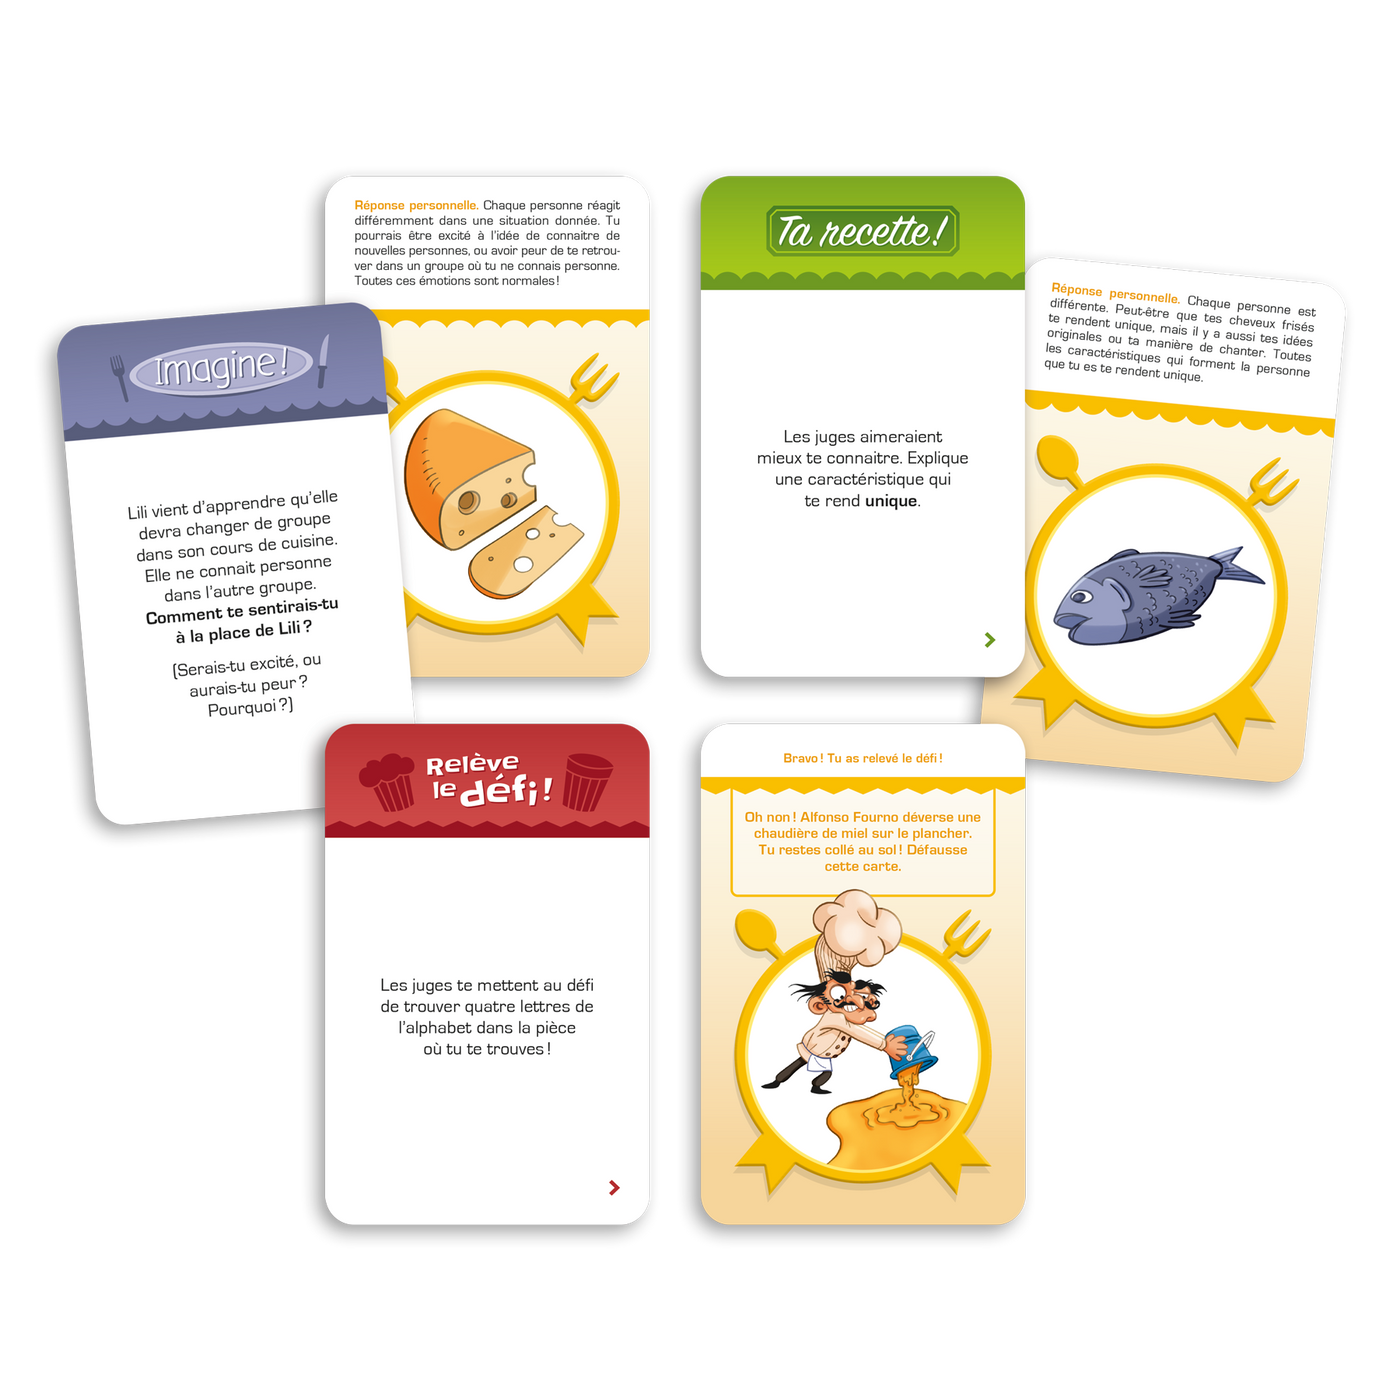 La guerre des toques – Exemples de cartes-questions : À toi de jouer, Ta recette, Relève le défi, etc.